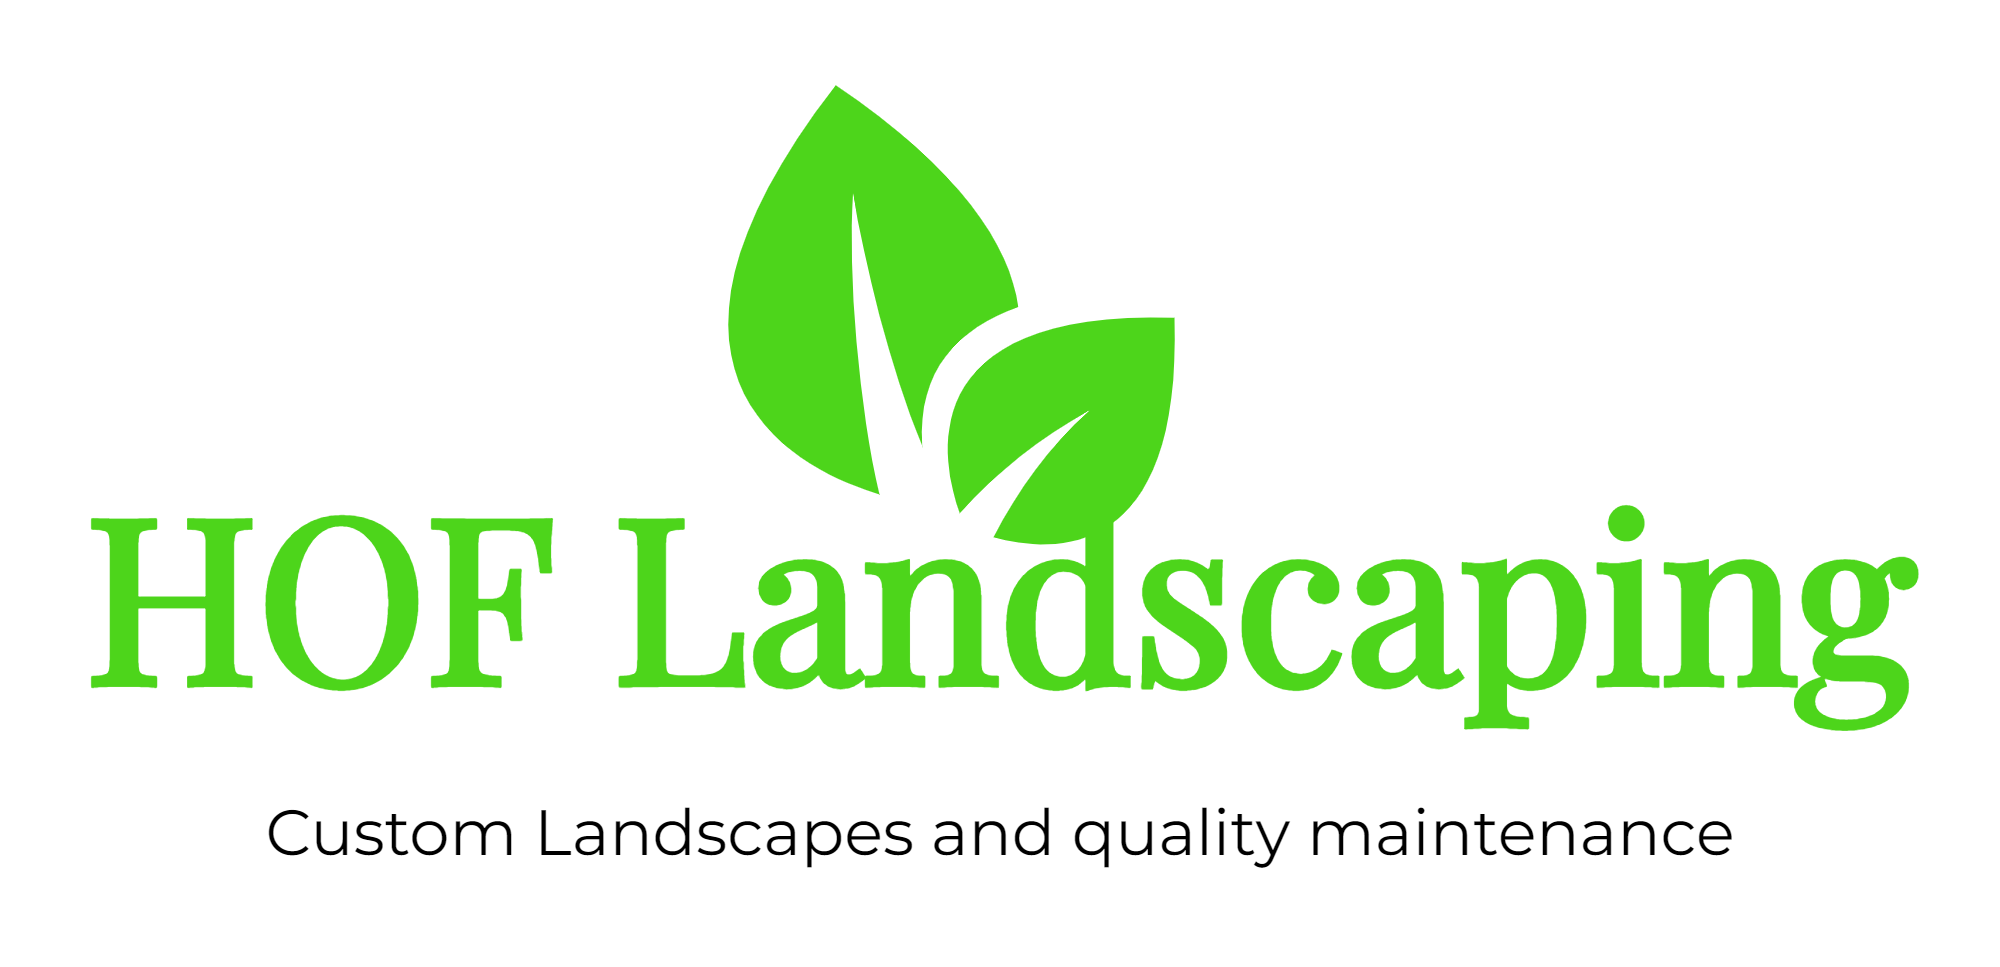 HOF Landscaping